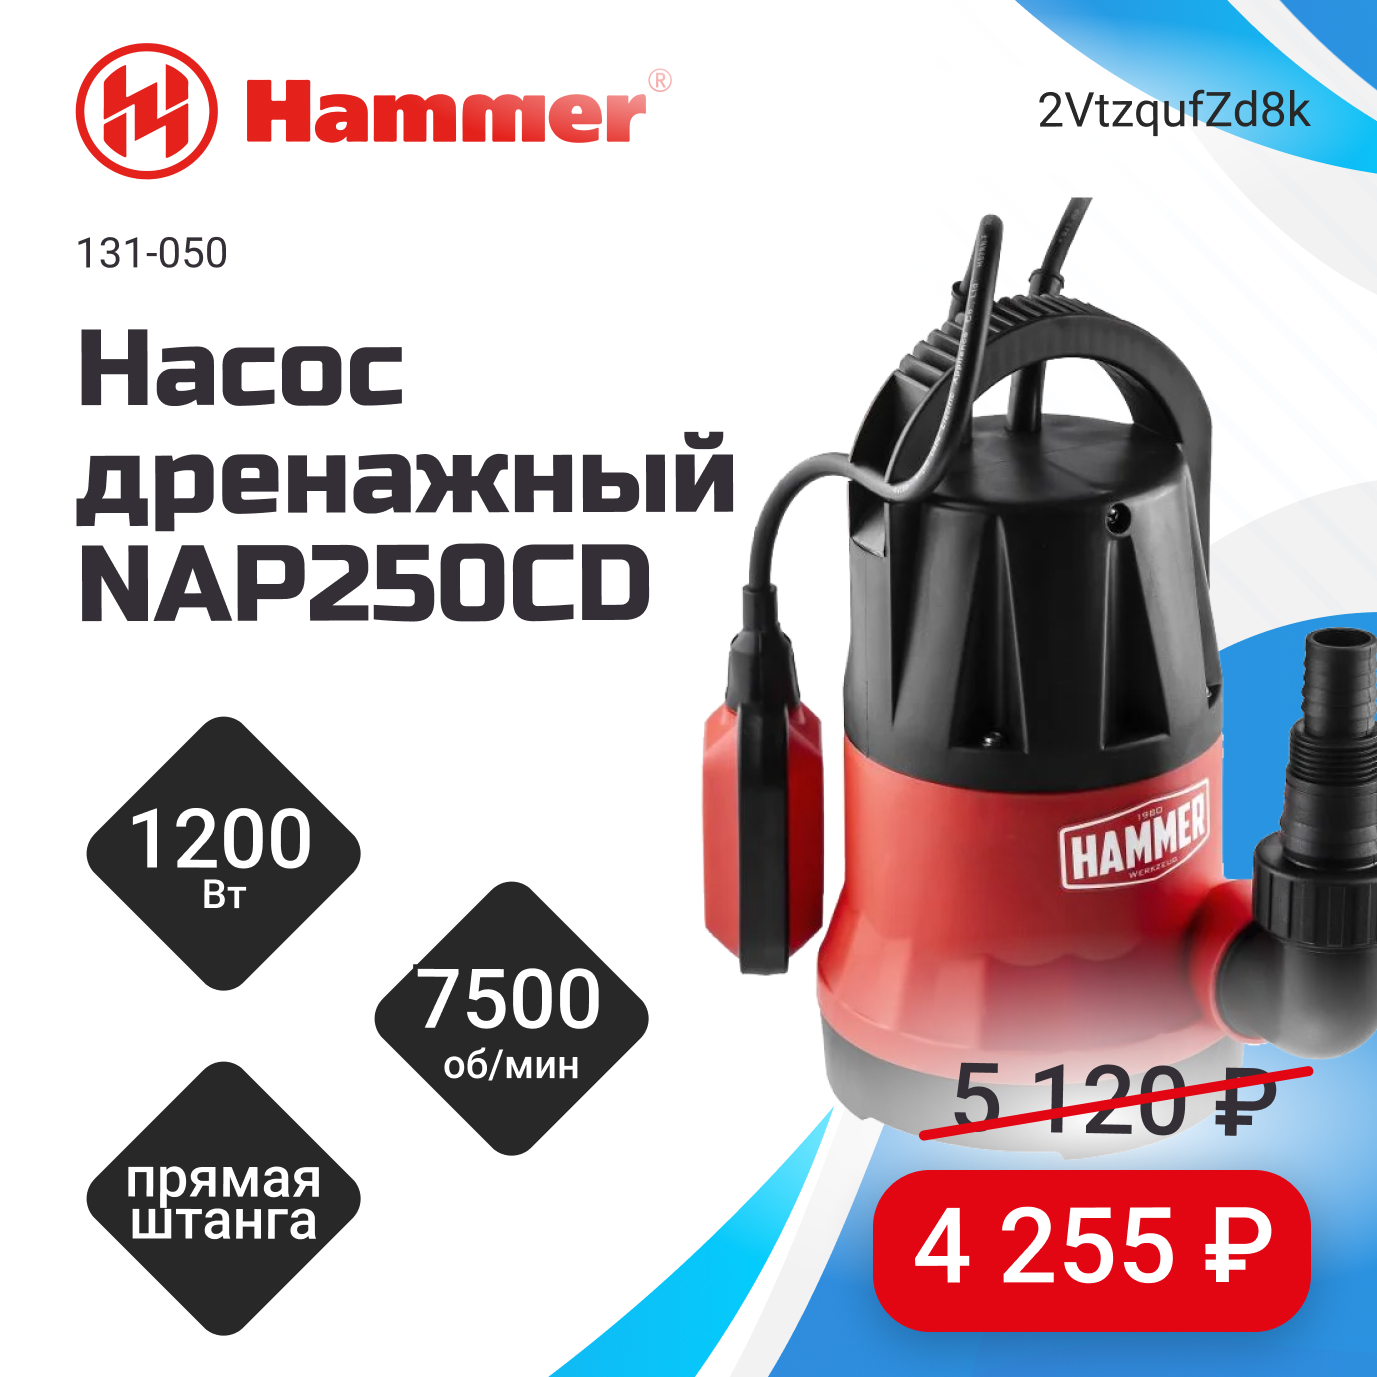 Насос дренажный Hammer NAP250CD со скидкой 17%